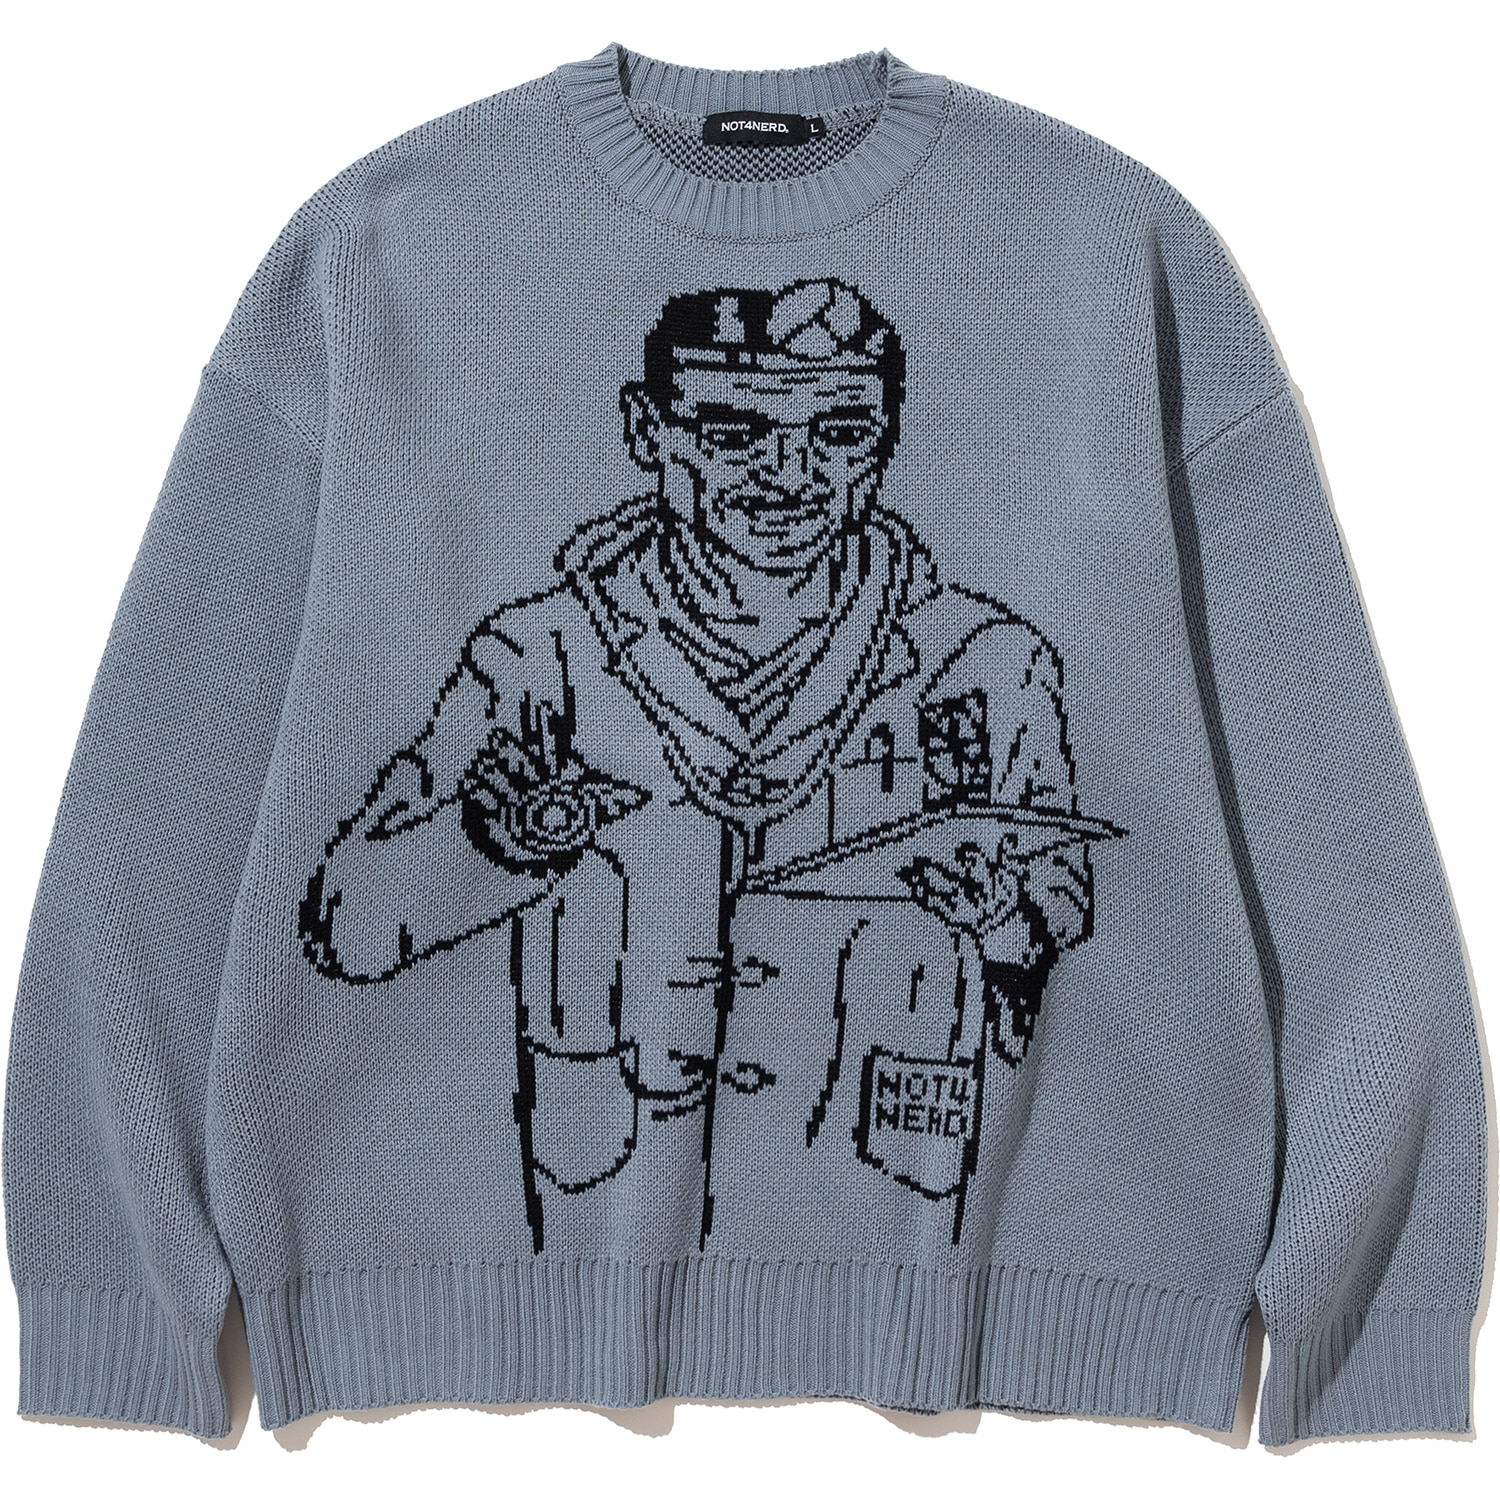 Doctor Knit Sweater - Blue Grey,NOT4NERD